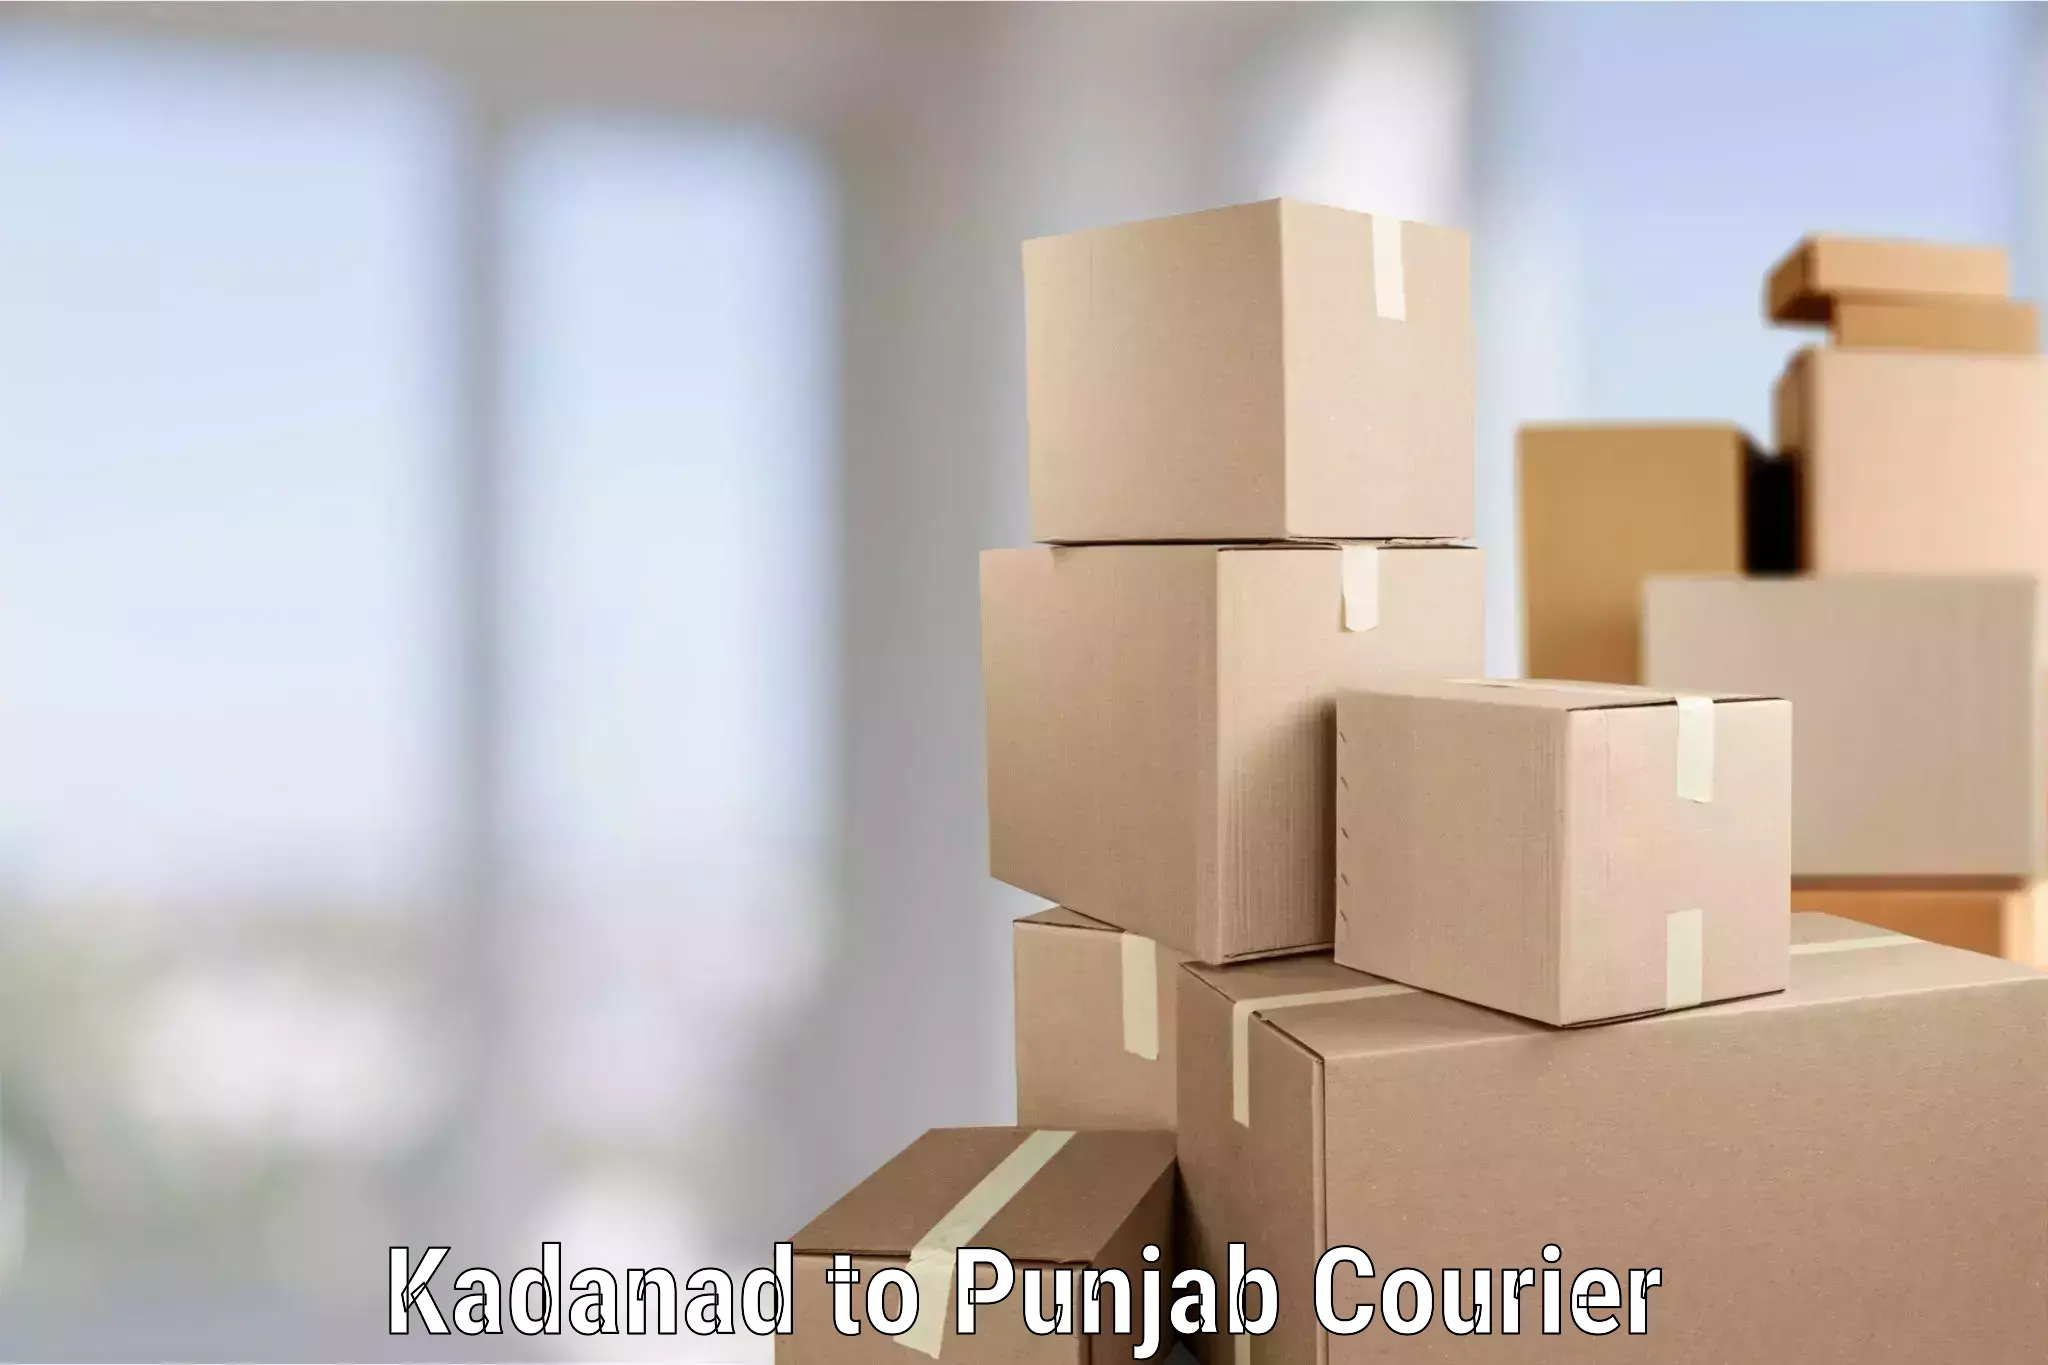 Furniture transport solutions Kadanad to Anandpur Sahib